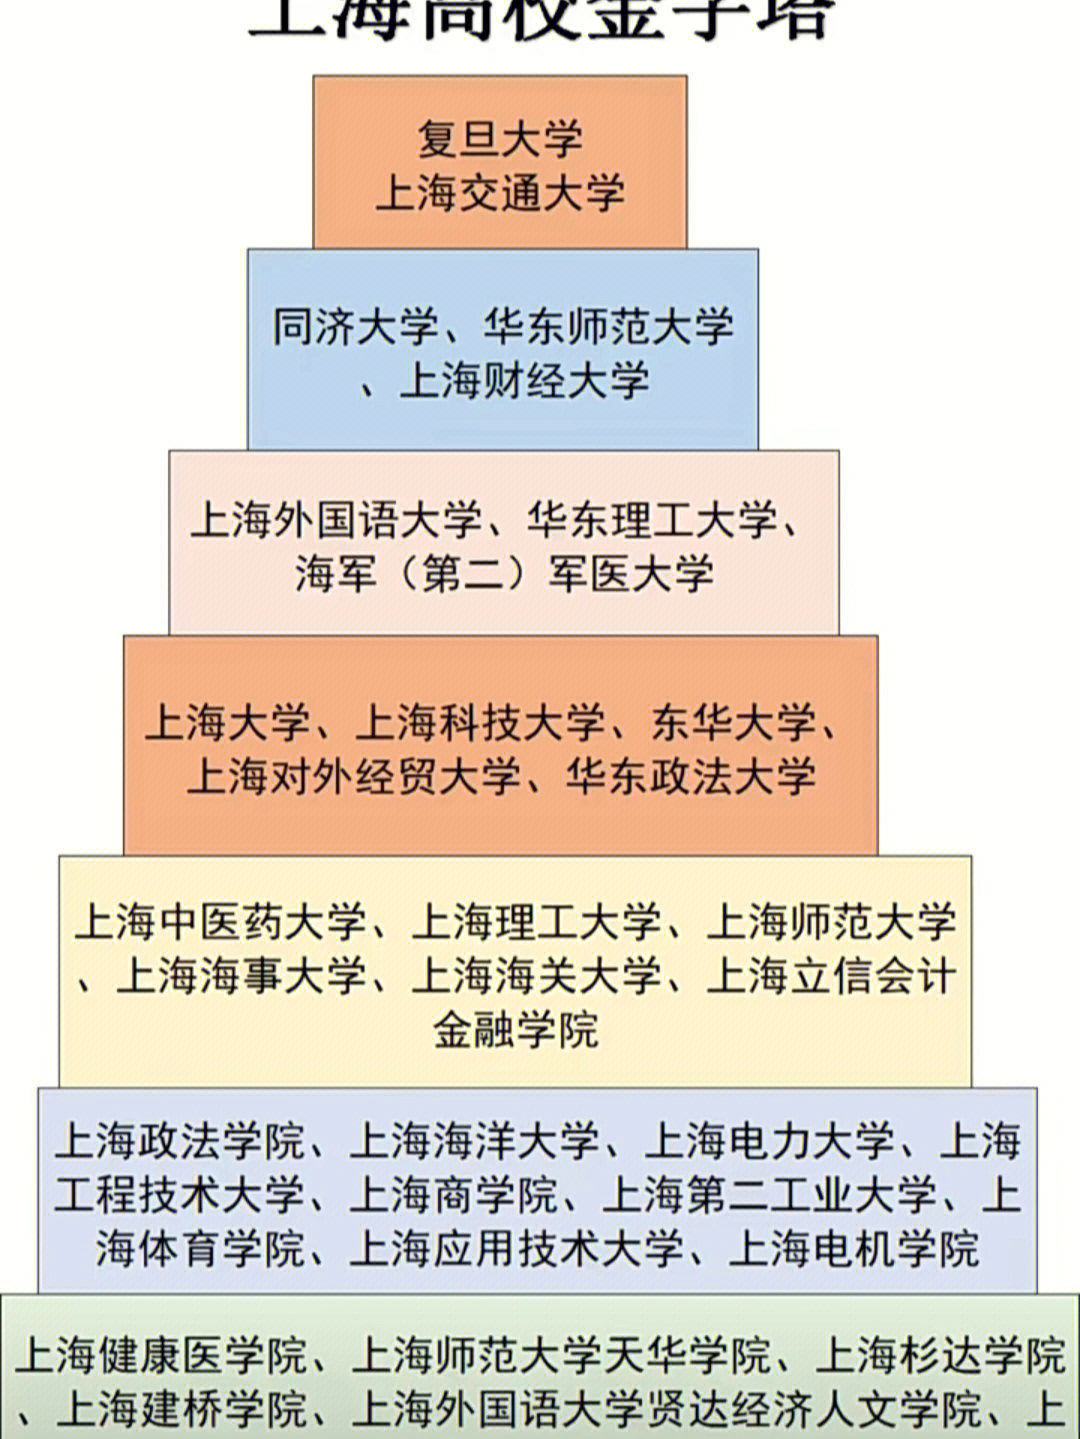 江西省高校金字塔图片